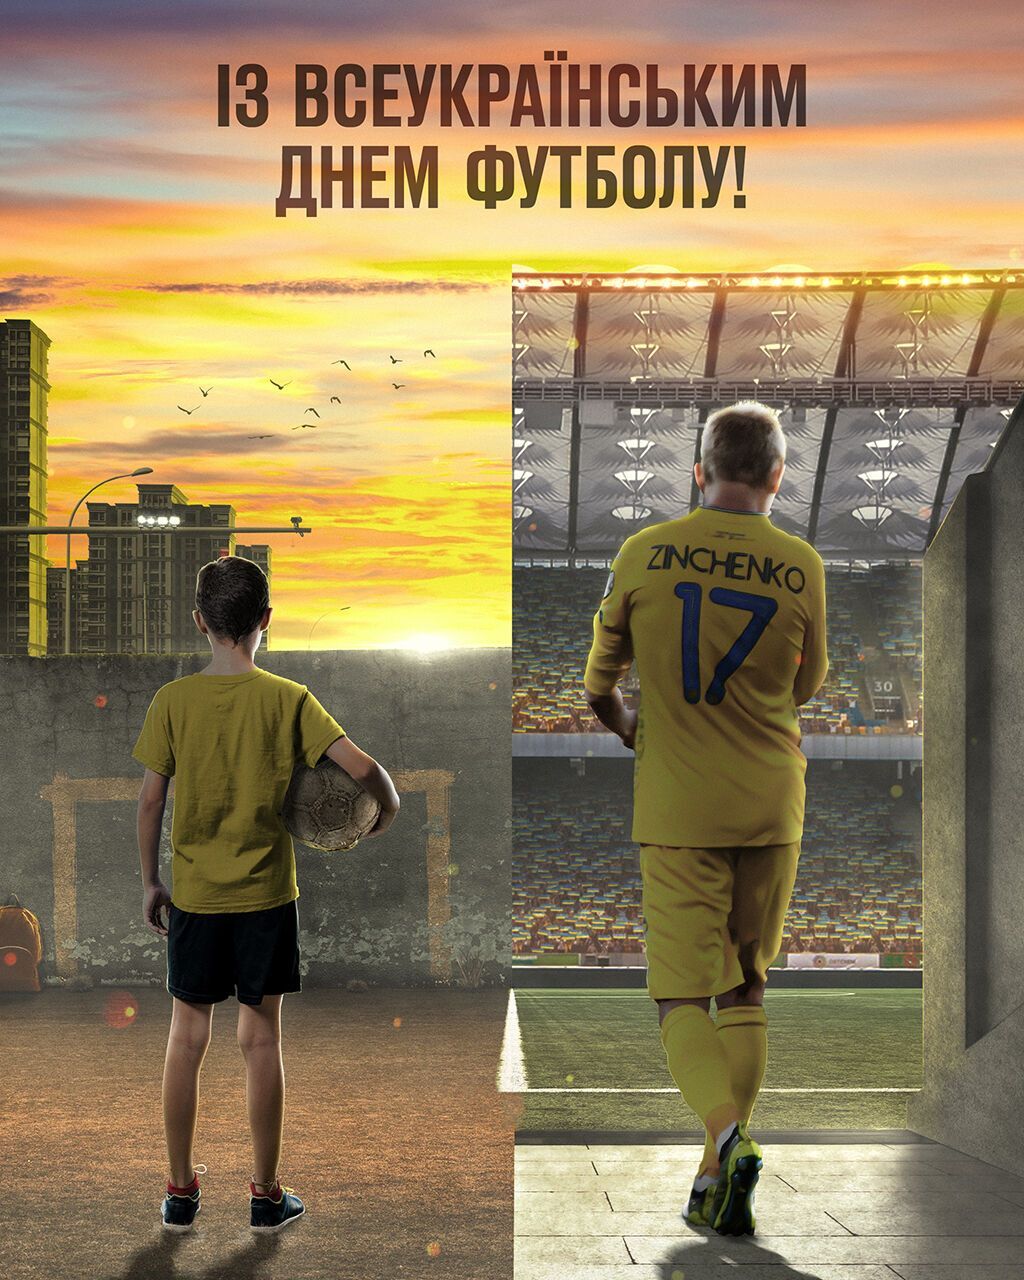 Всеукраинский день футбола